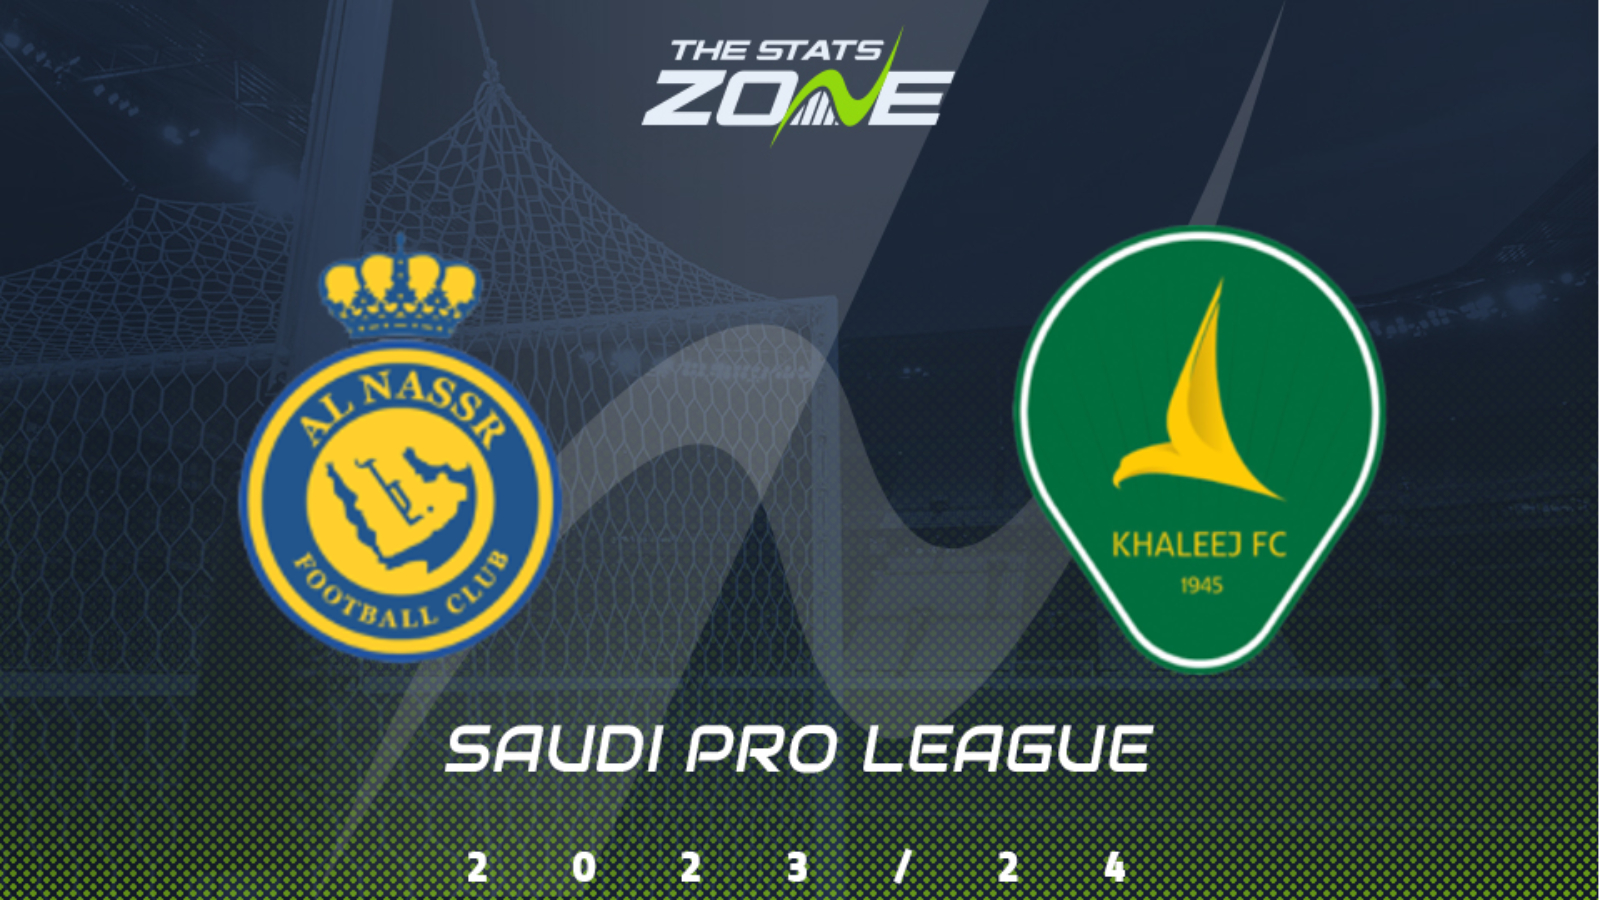 Saudi pro league. Saudi Pro League logo. Saudi Pro League standings. Saudi Pro League logo без фона.